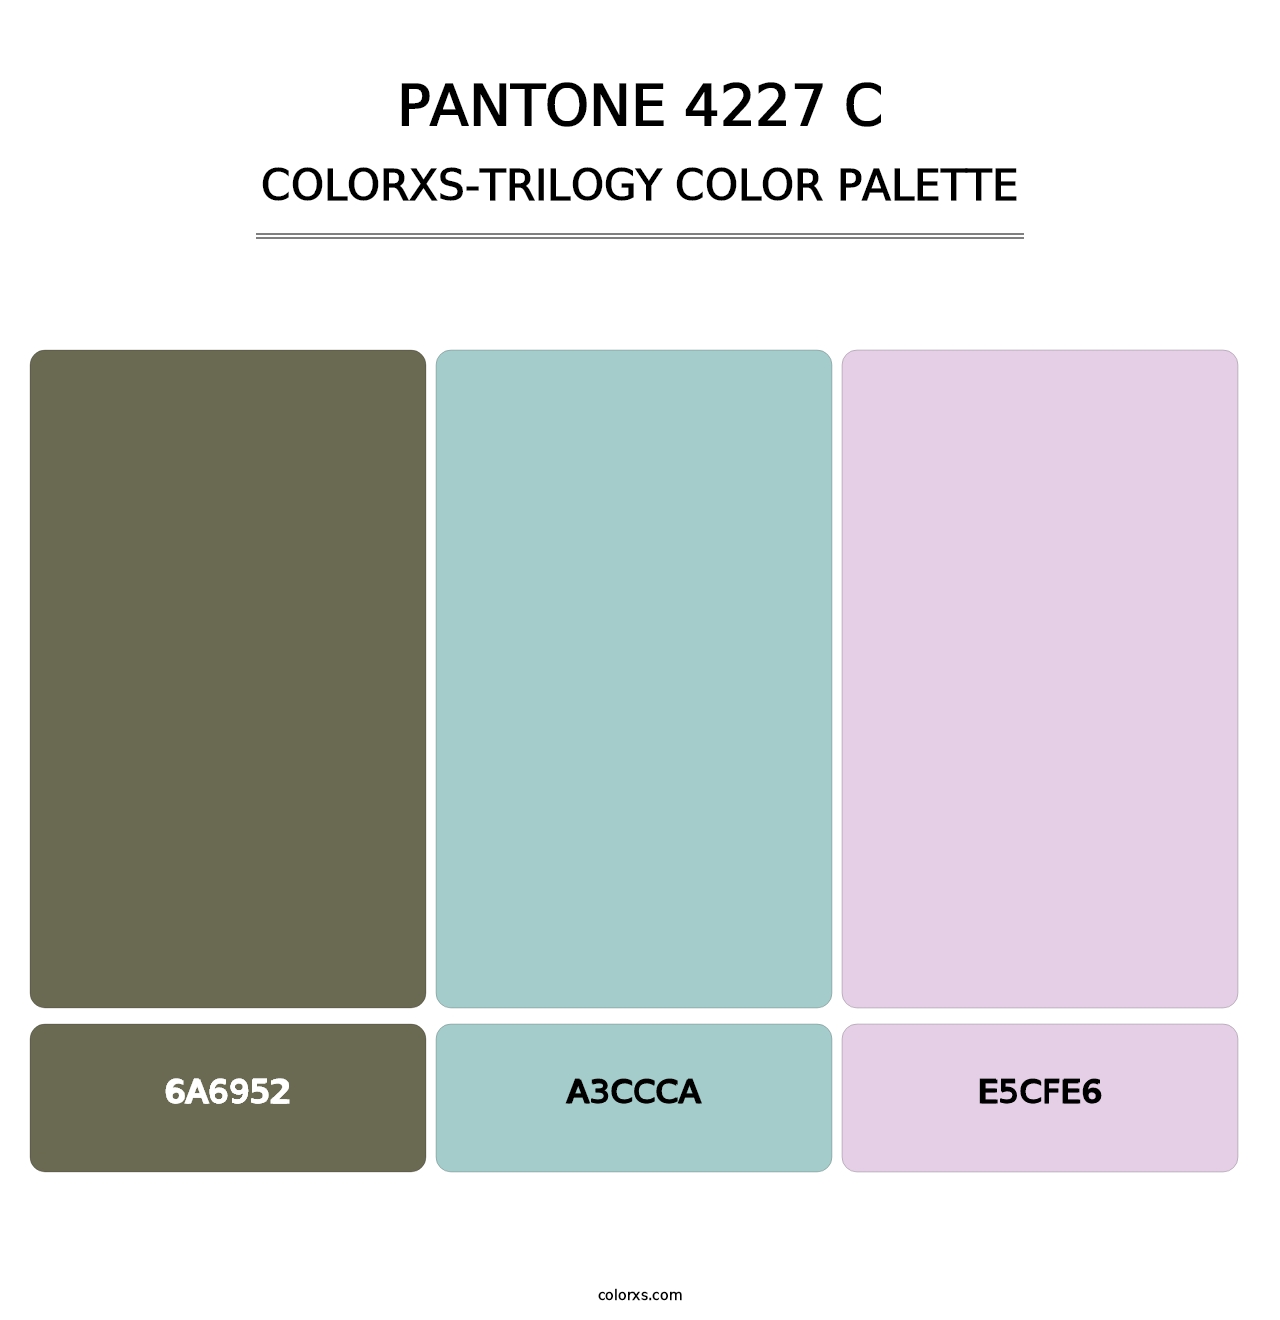 PANTONE 4227 C - Colorxs Trilogy Palette